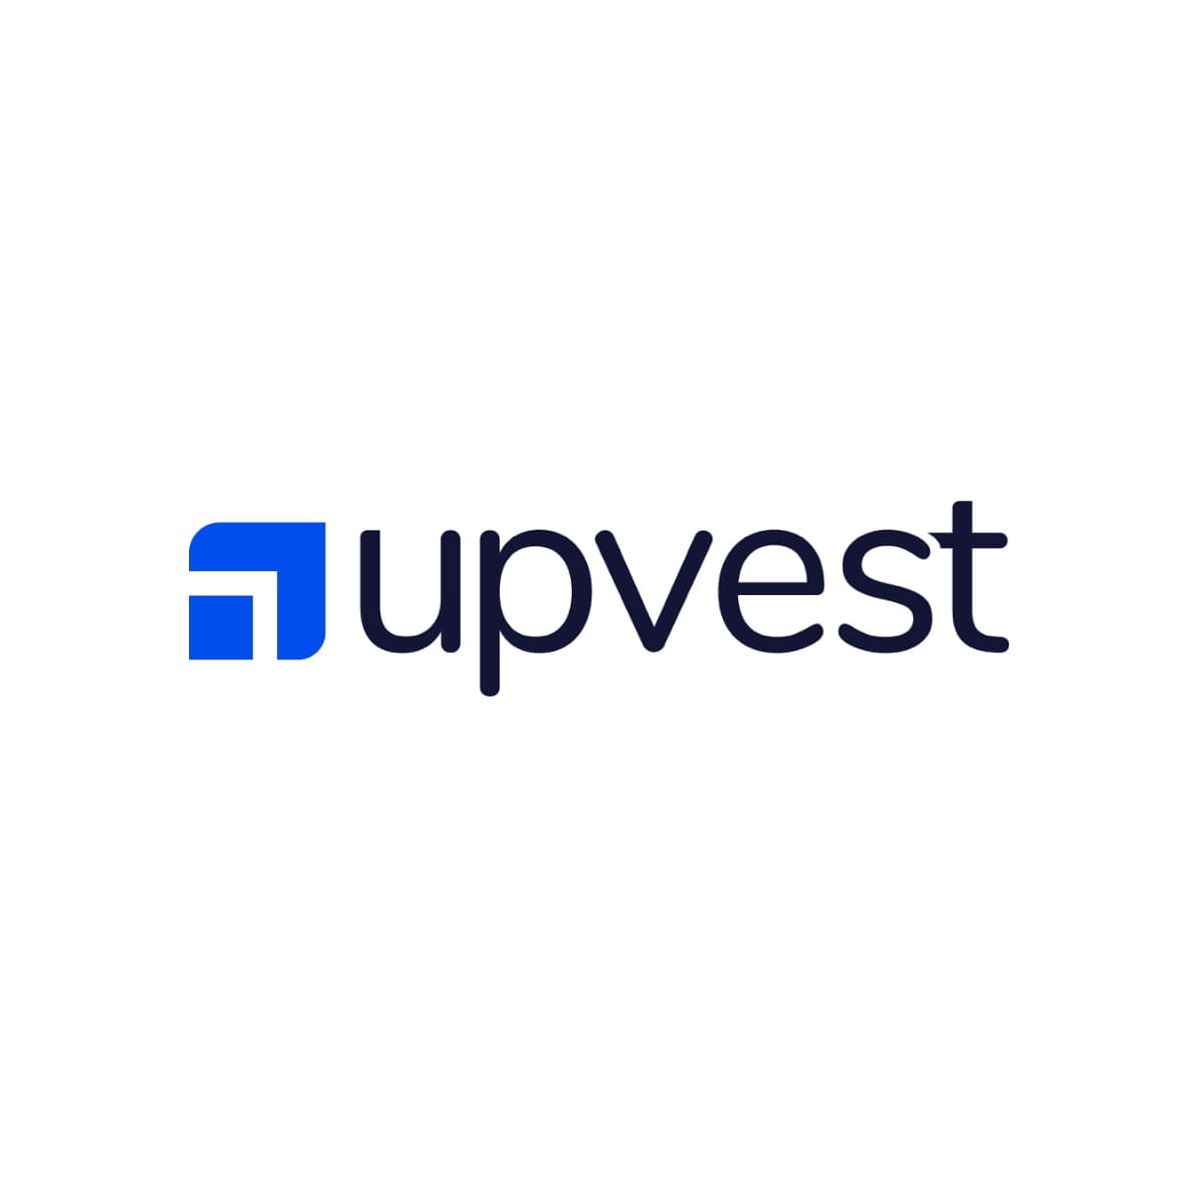 Upvest's logo